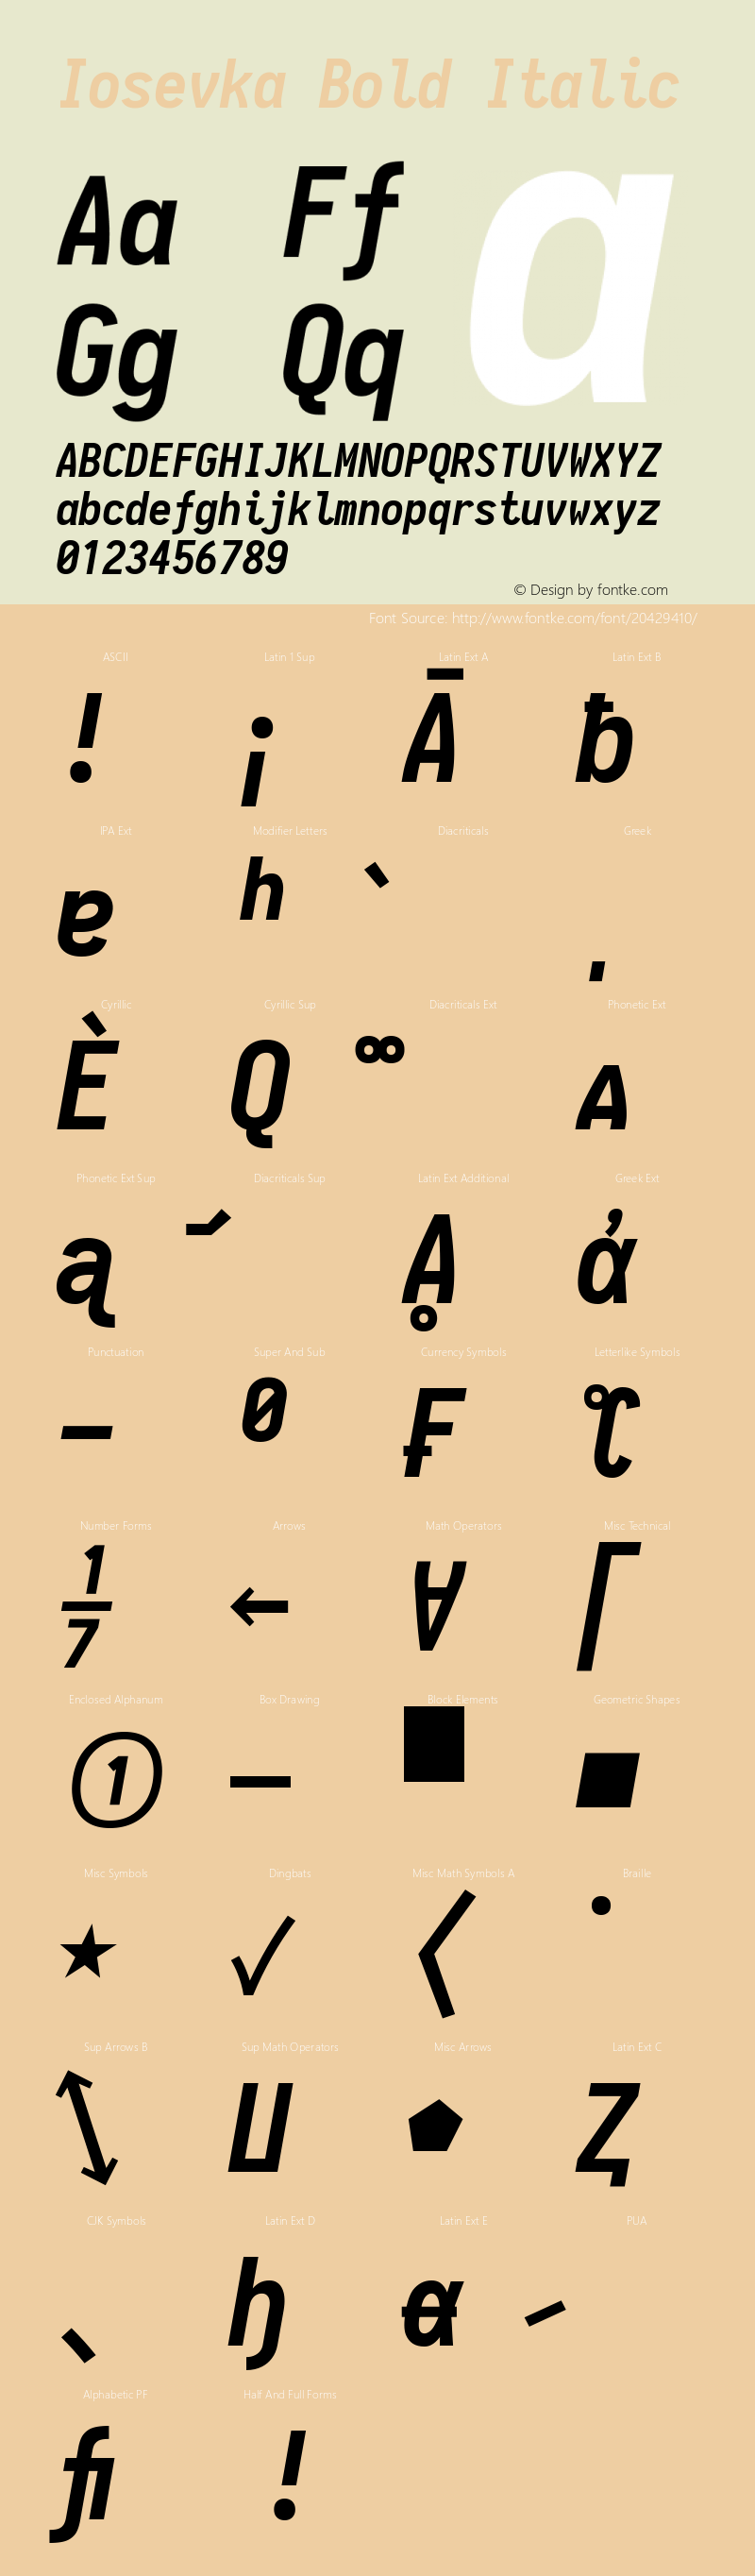 IosevkaCC Bold Italic 1.12.3; ttfautohint (v1.6)图片样张